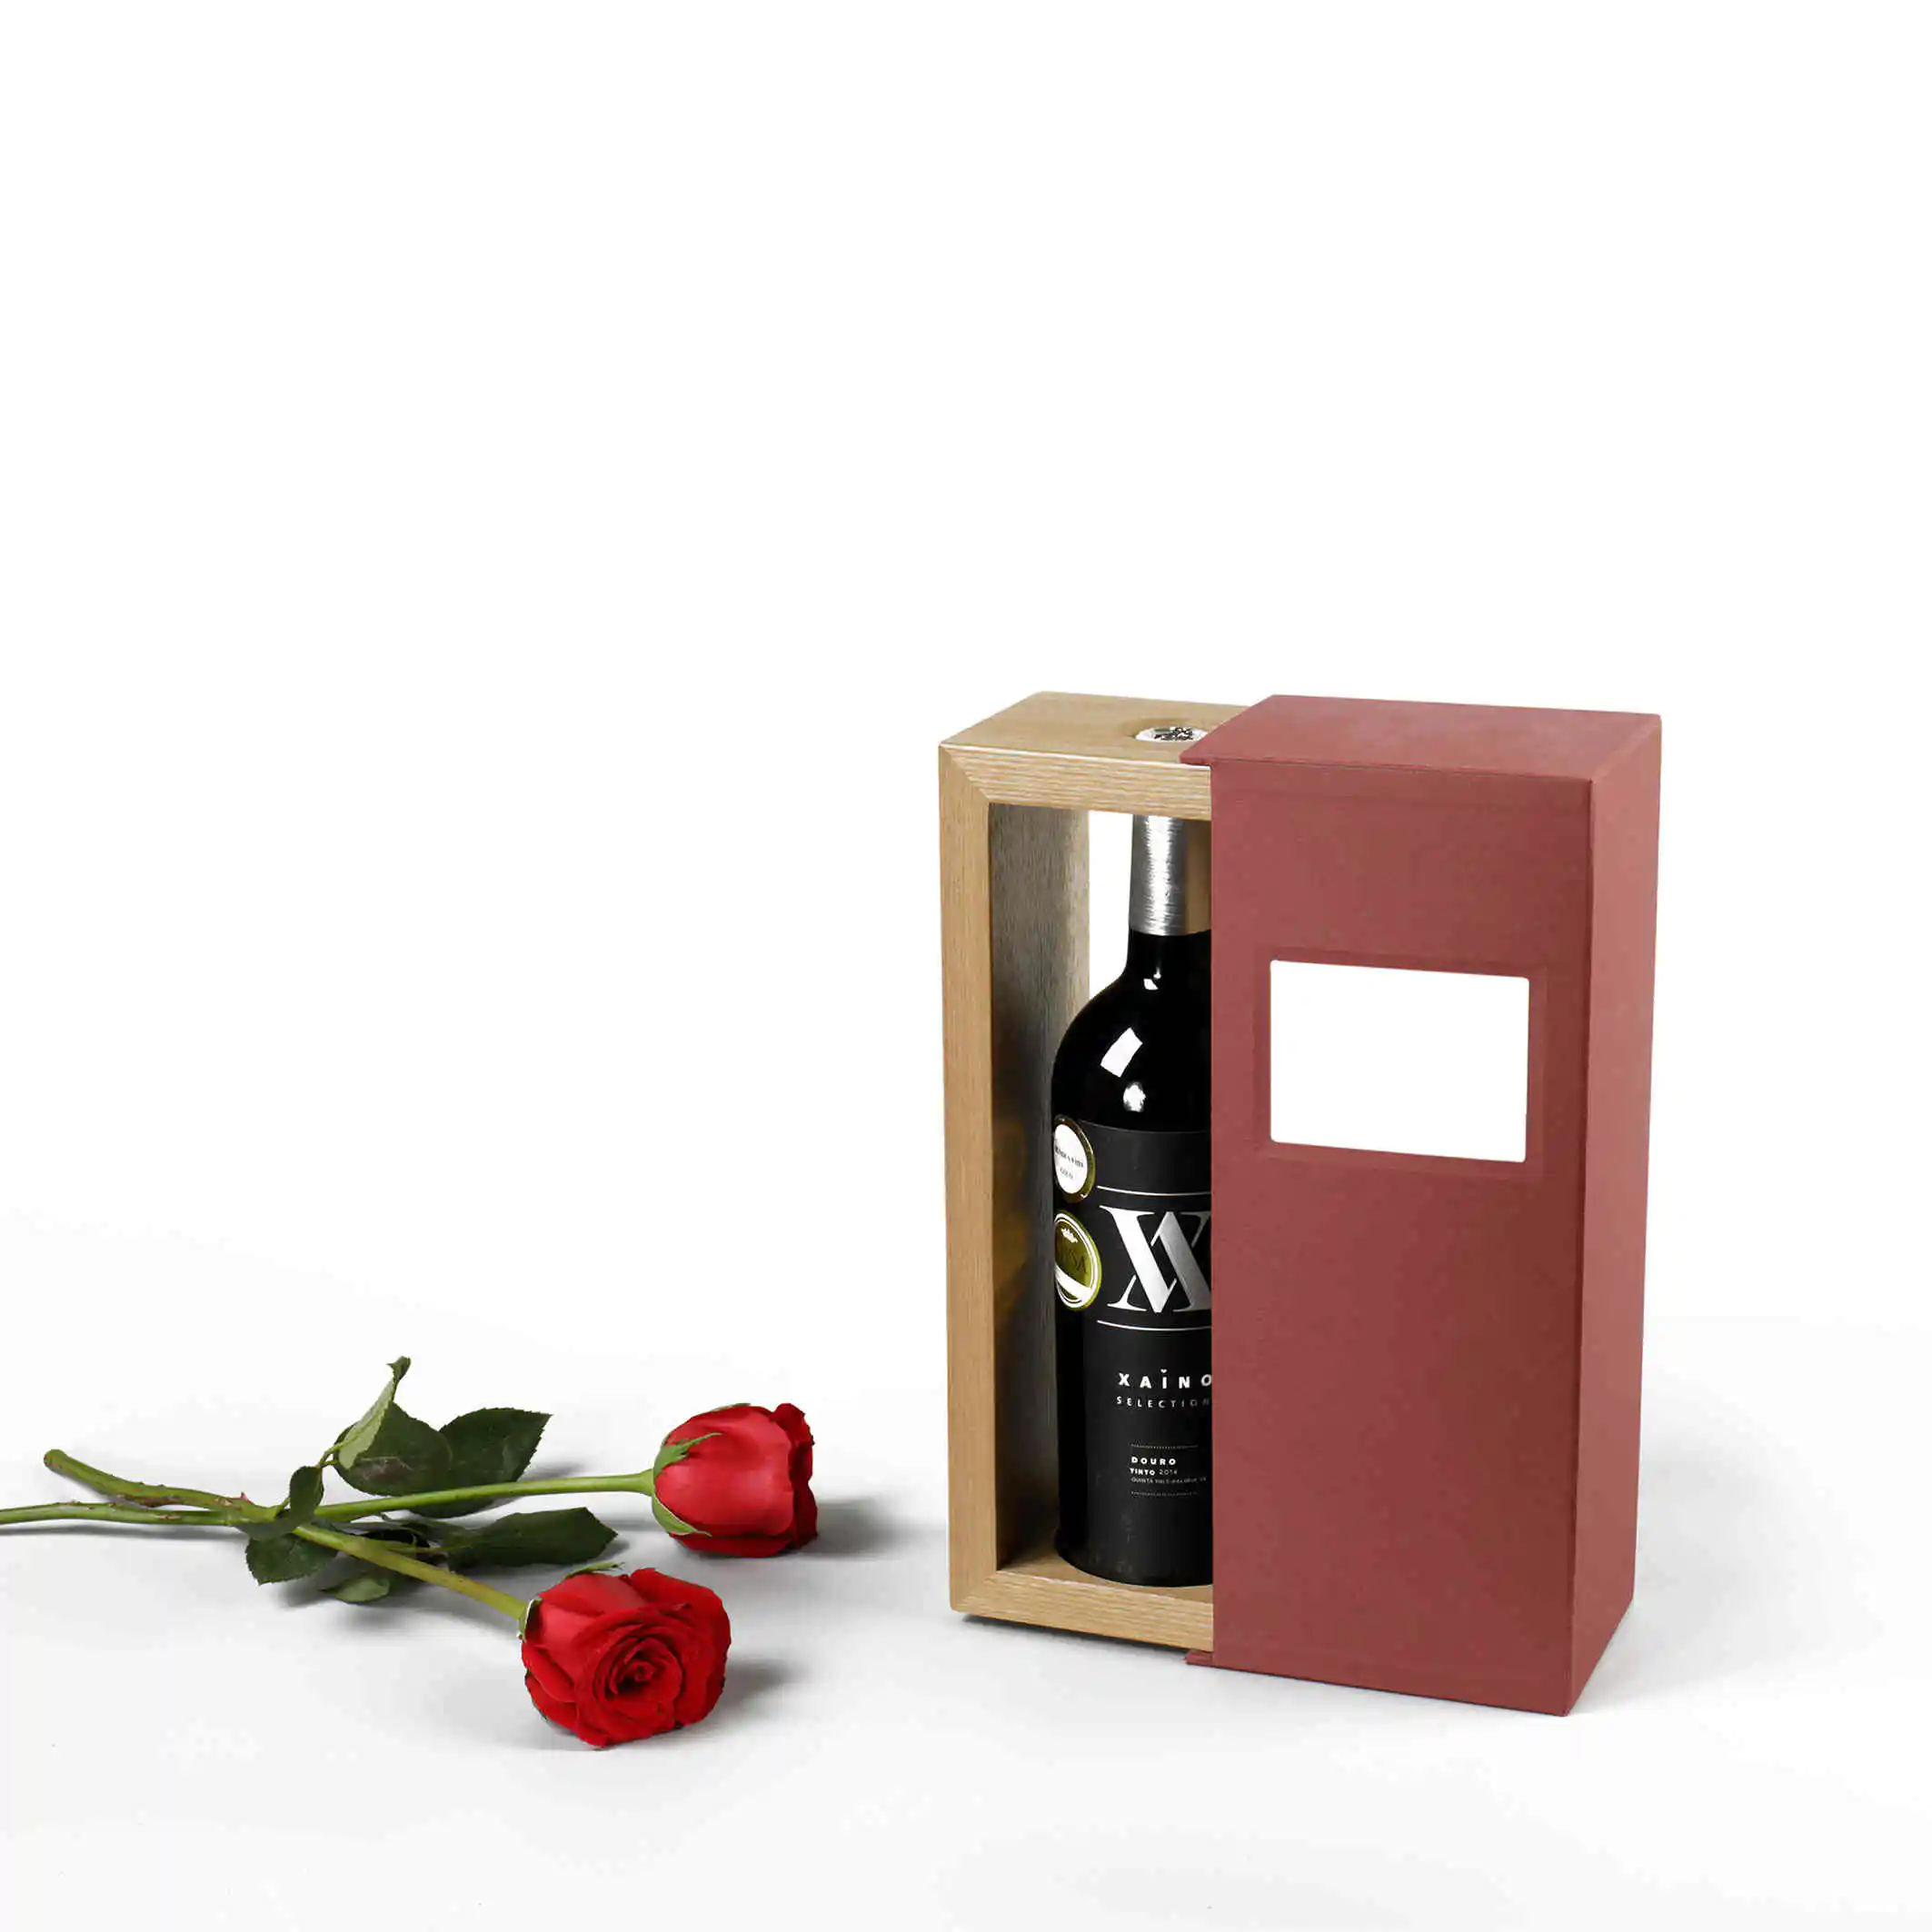 Ahşap Şarap Kutusu Hediye El Yapımı Kağıt Manyetik Özel Karton Şarap Kutusu 1 Şişe Hediye Ahşap Şarap Kutusu